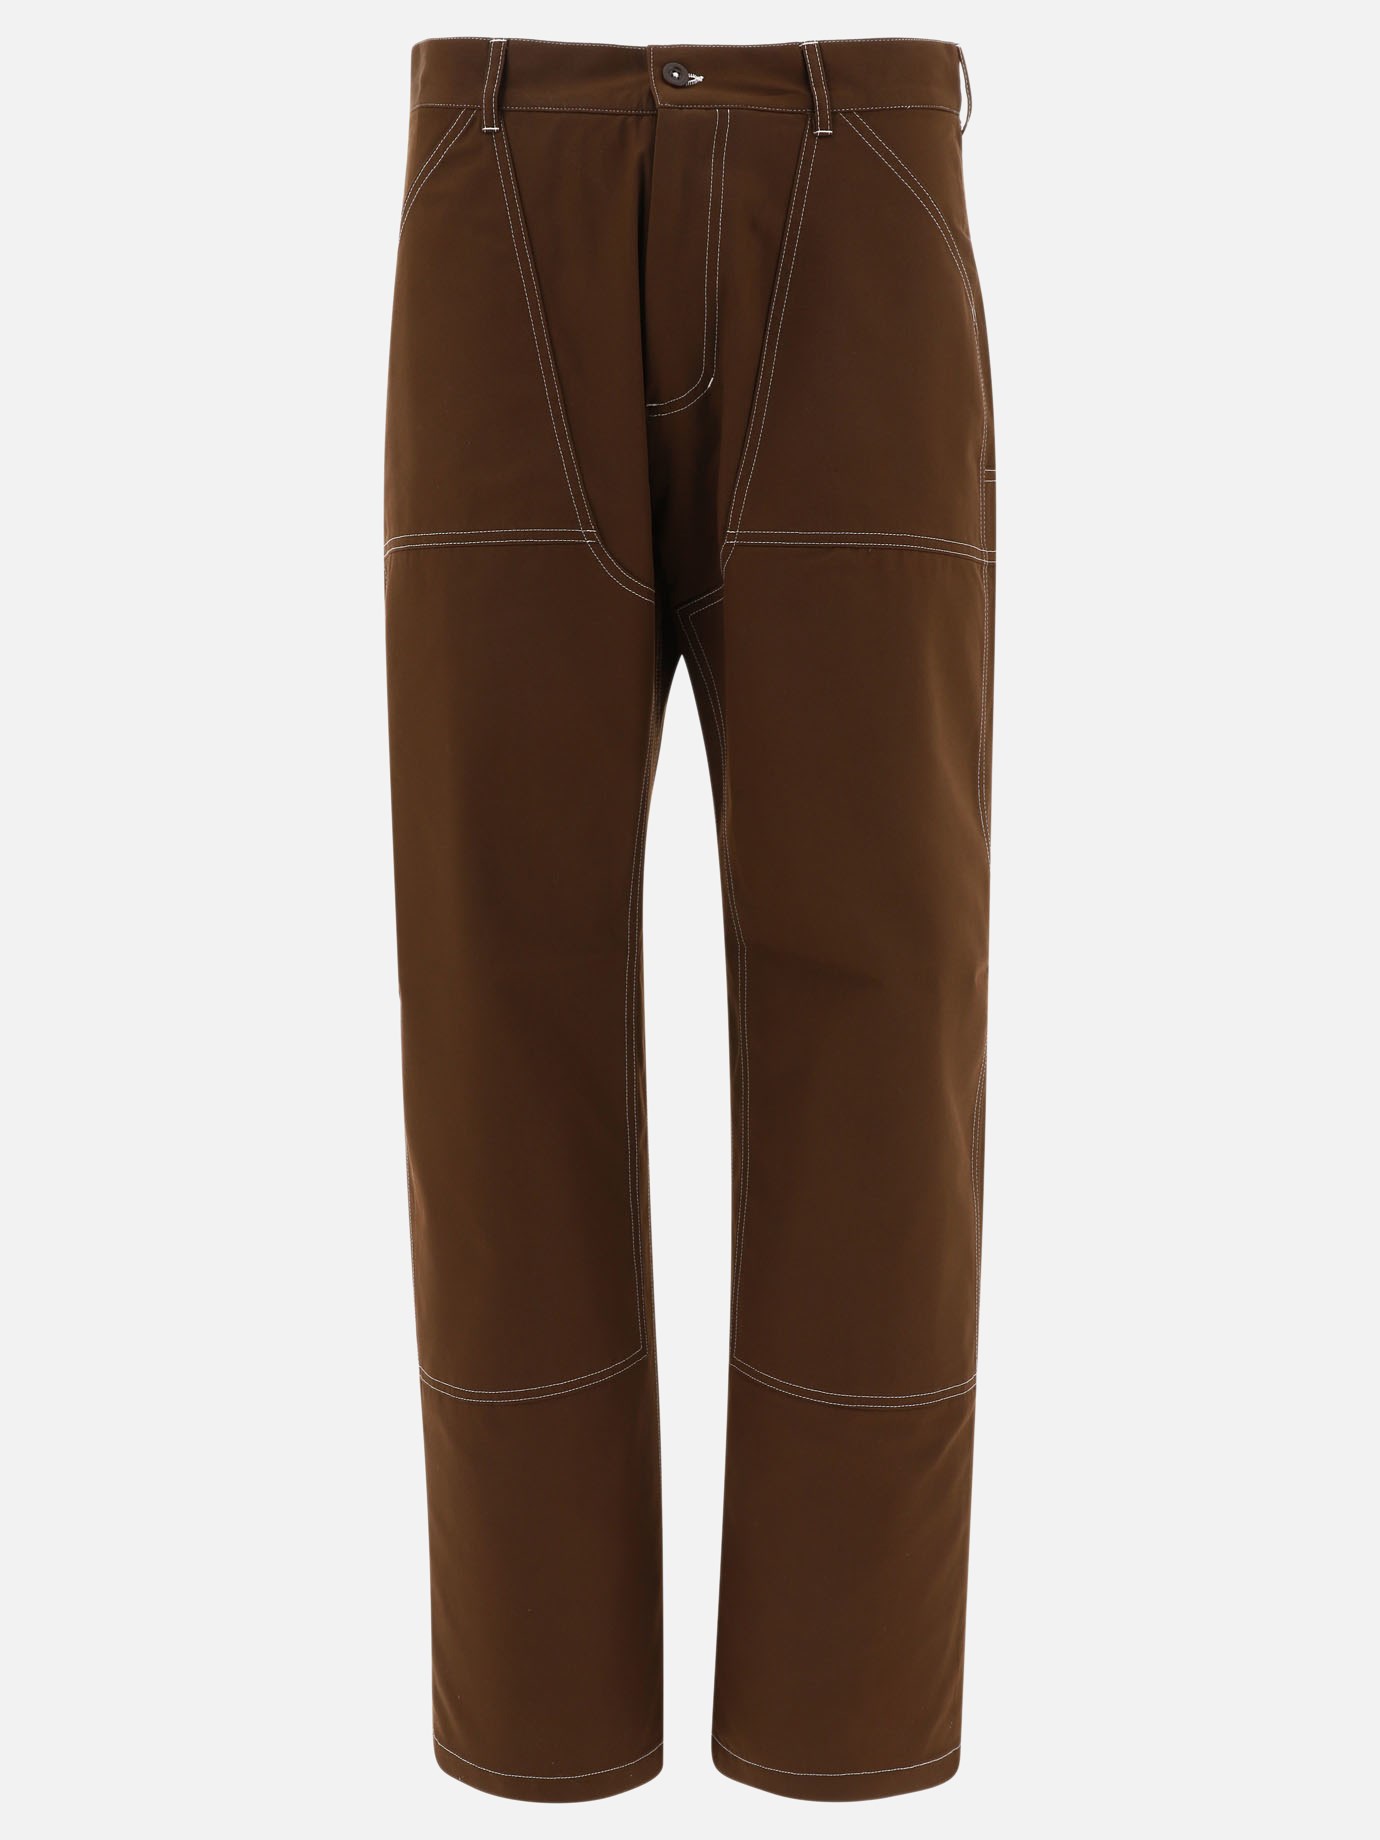 Pantaloni  Workpants by Paccbet - 0